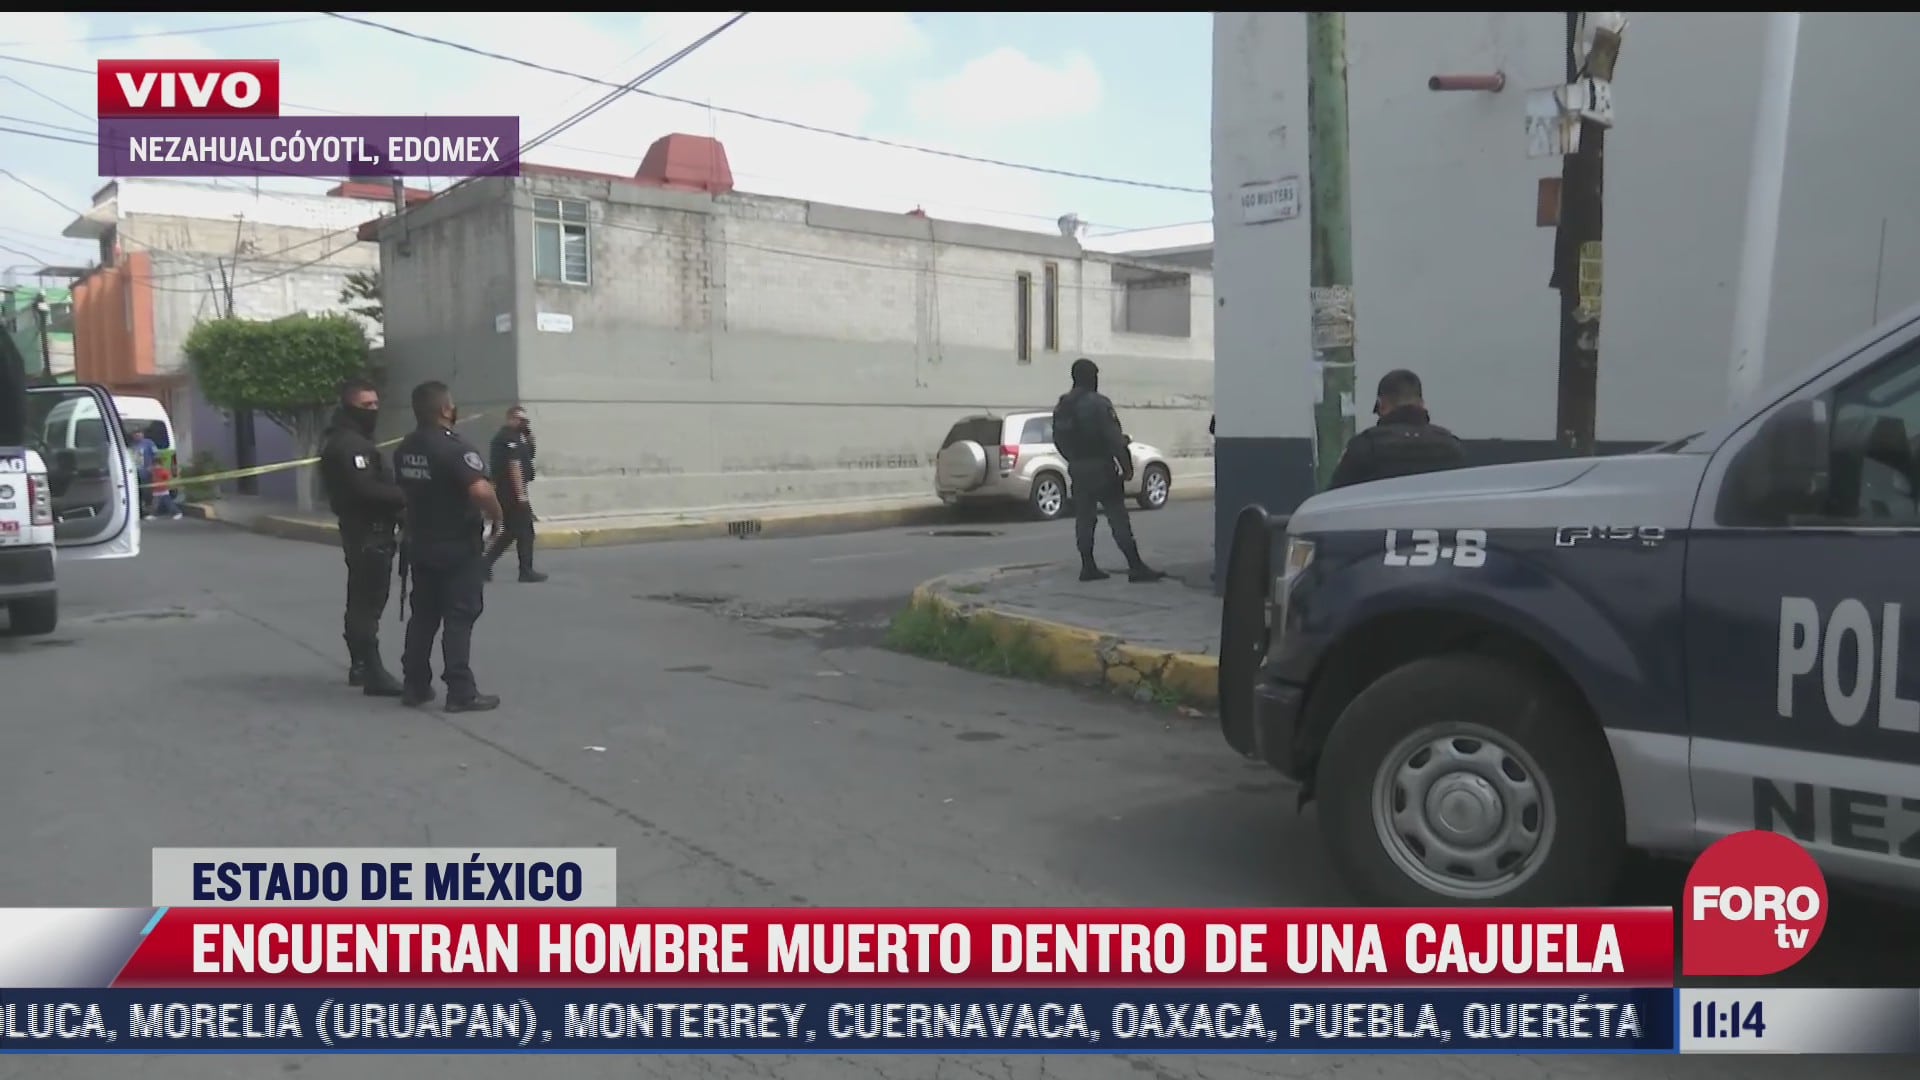 encuentran hombre muerto dentro de una cajuela en nezahualcoyotl estado de mexico